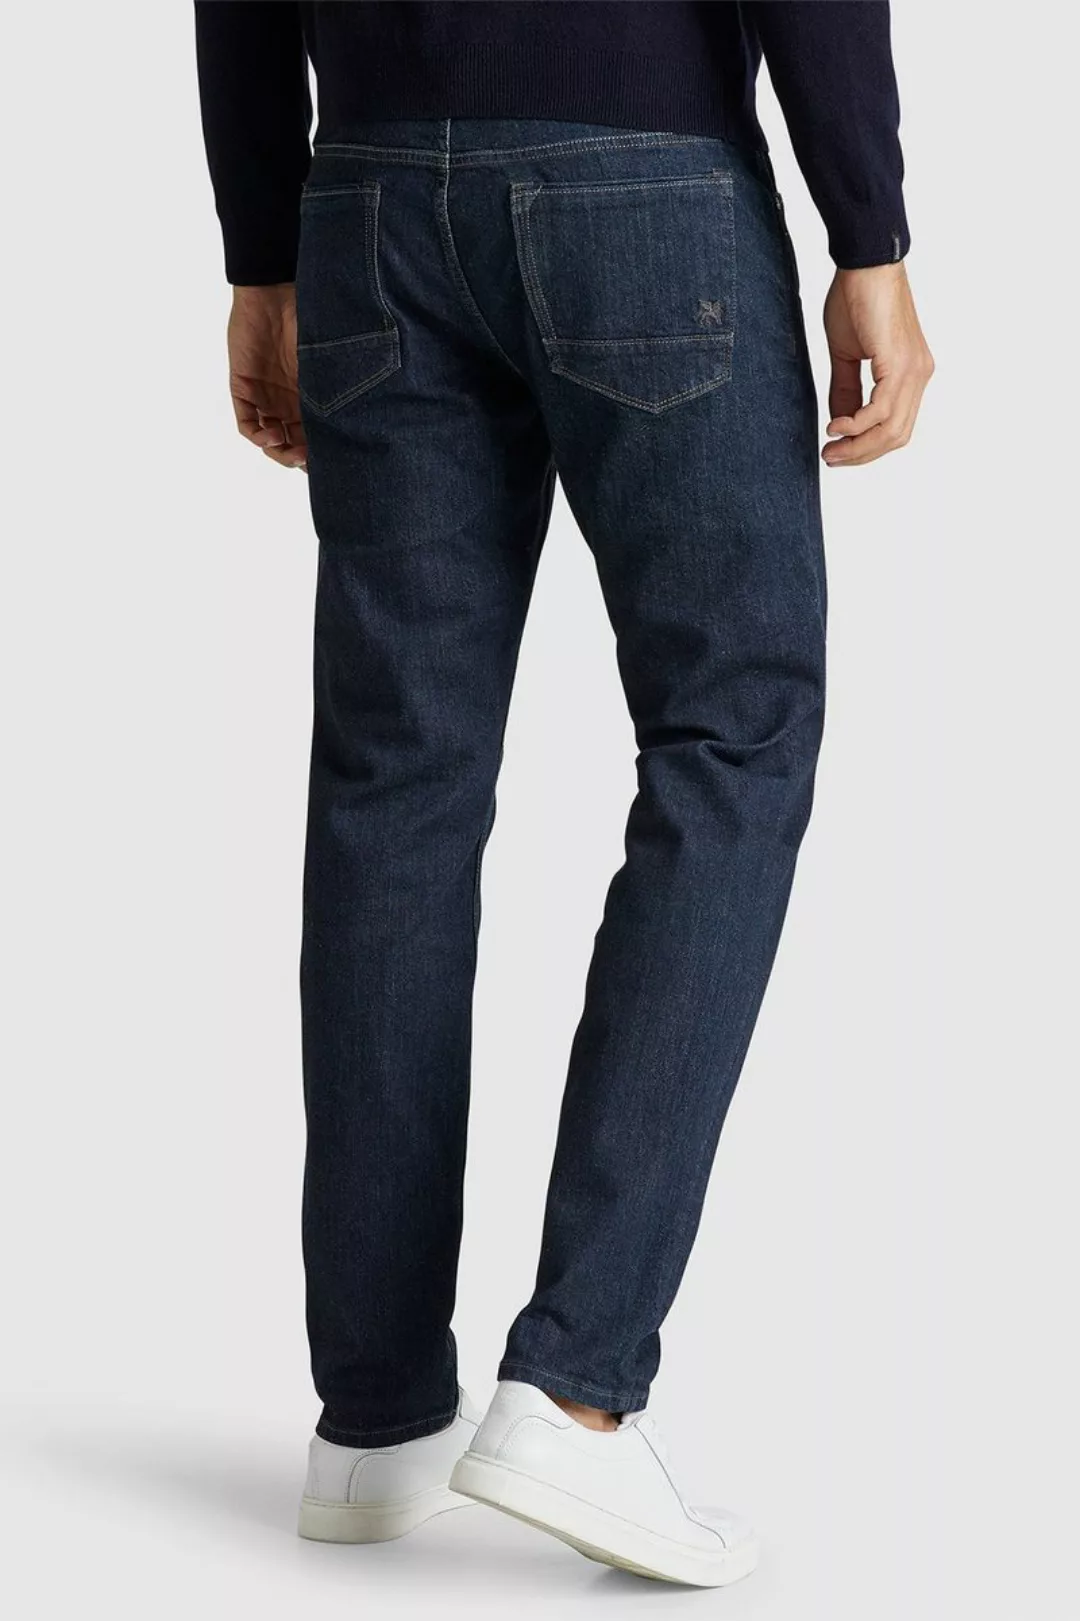 Vanguard Jeans V7 Rider Dunkelblau - Größe W 36 - L 30 günstig online kaufen